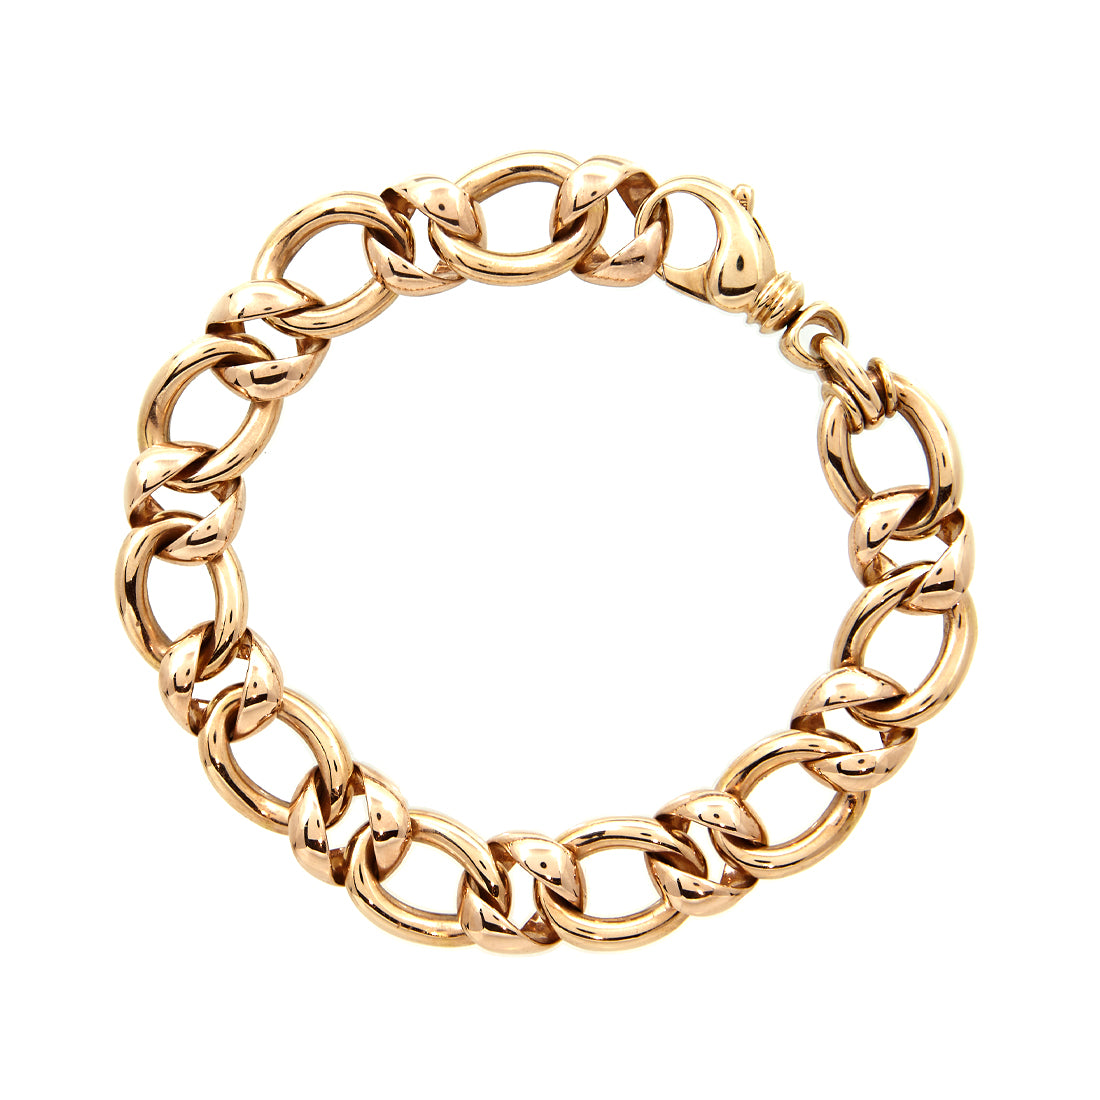 Rose gold fantasy link bracelet